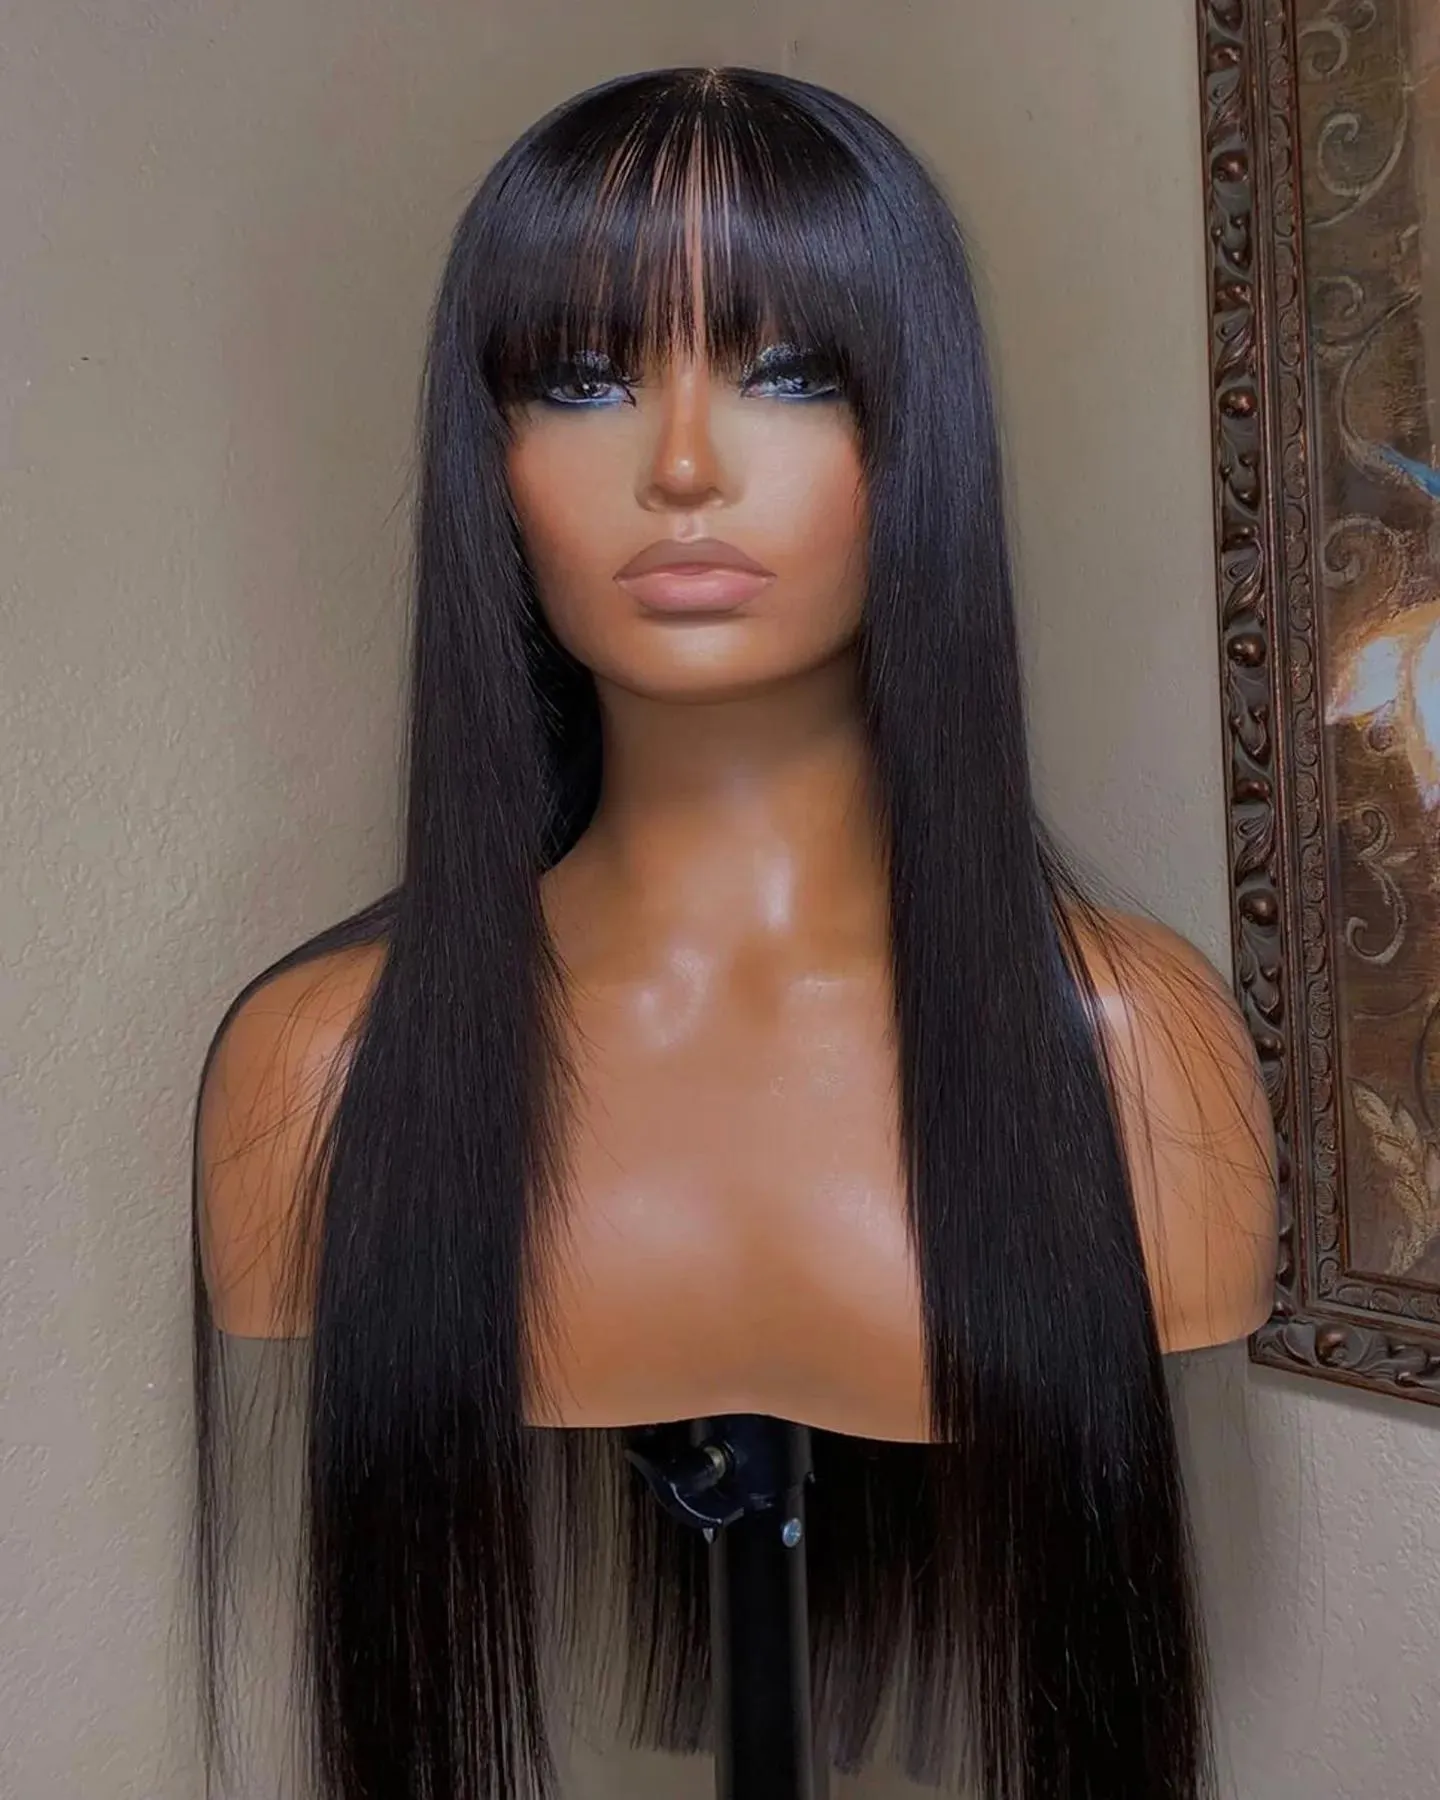 Perucas brasileiras em linha reta perucas de cabelo humano com franja frente do laço completo perucas coloridas cabelo humano para preto feminino longo peruca sintética natural